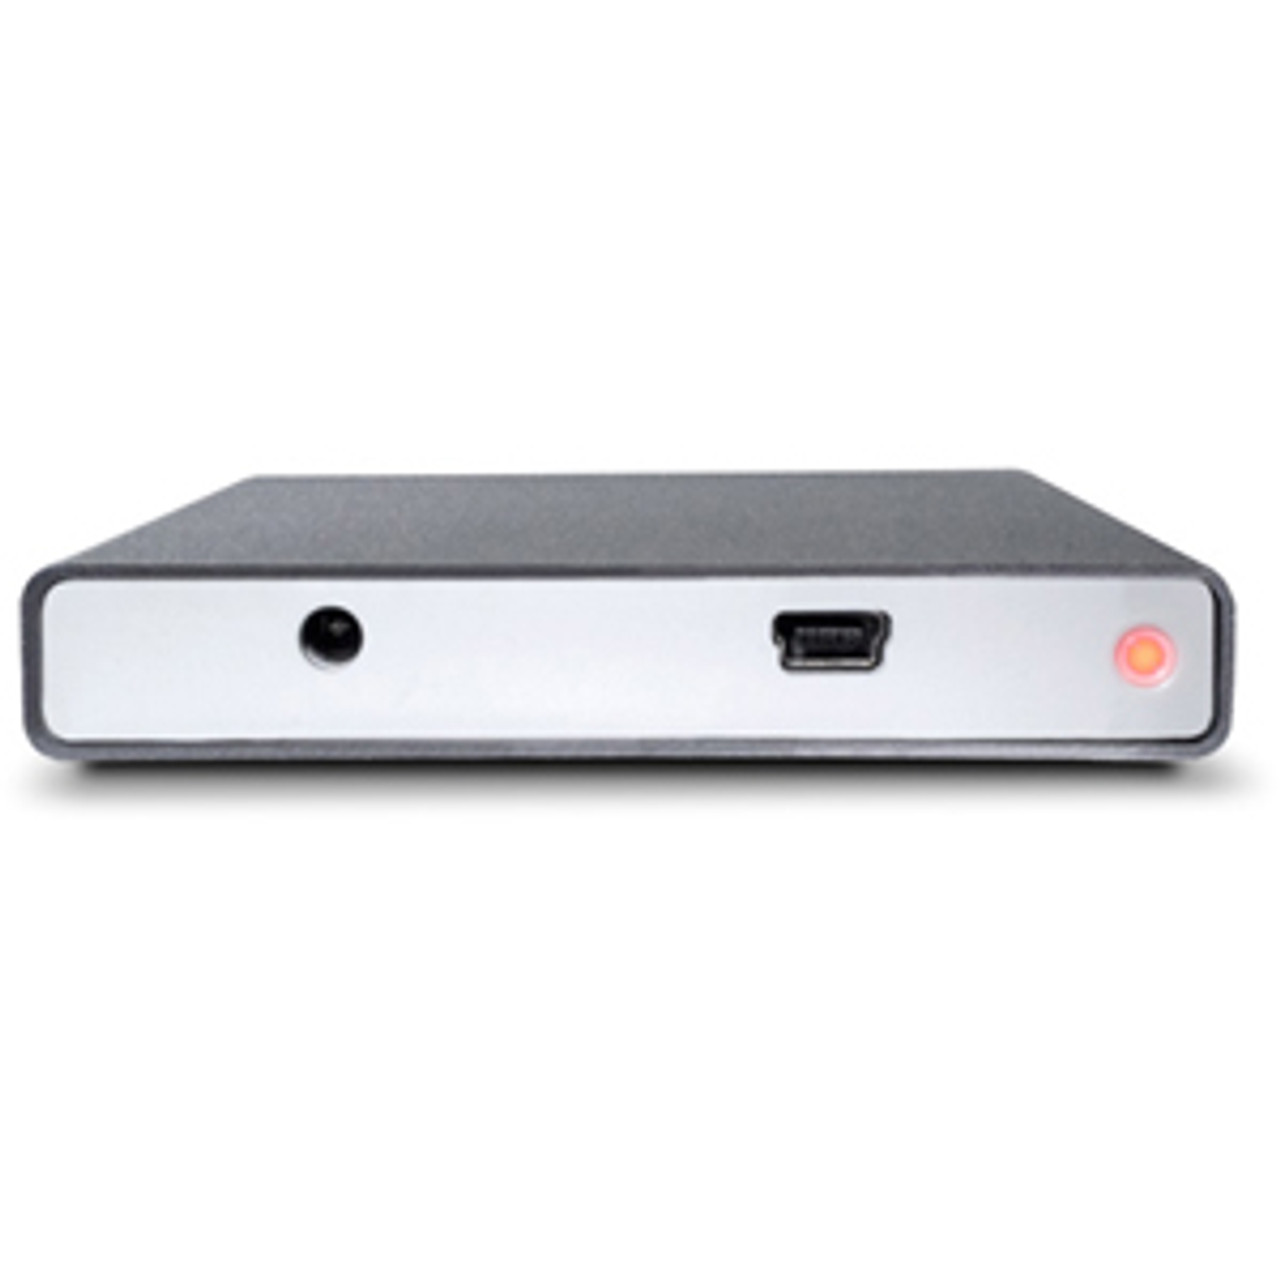 301894 - LaCie 320 GB 2.5 External Hard Drive - USB 2.0 - 5400 rpm